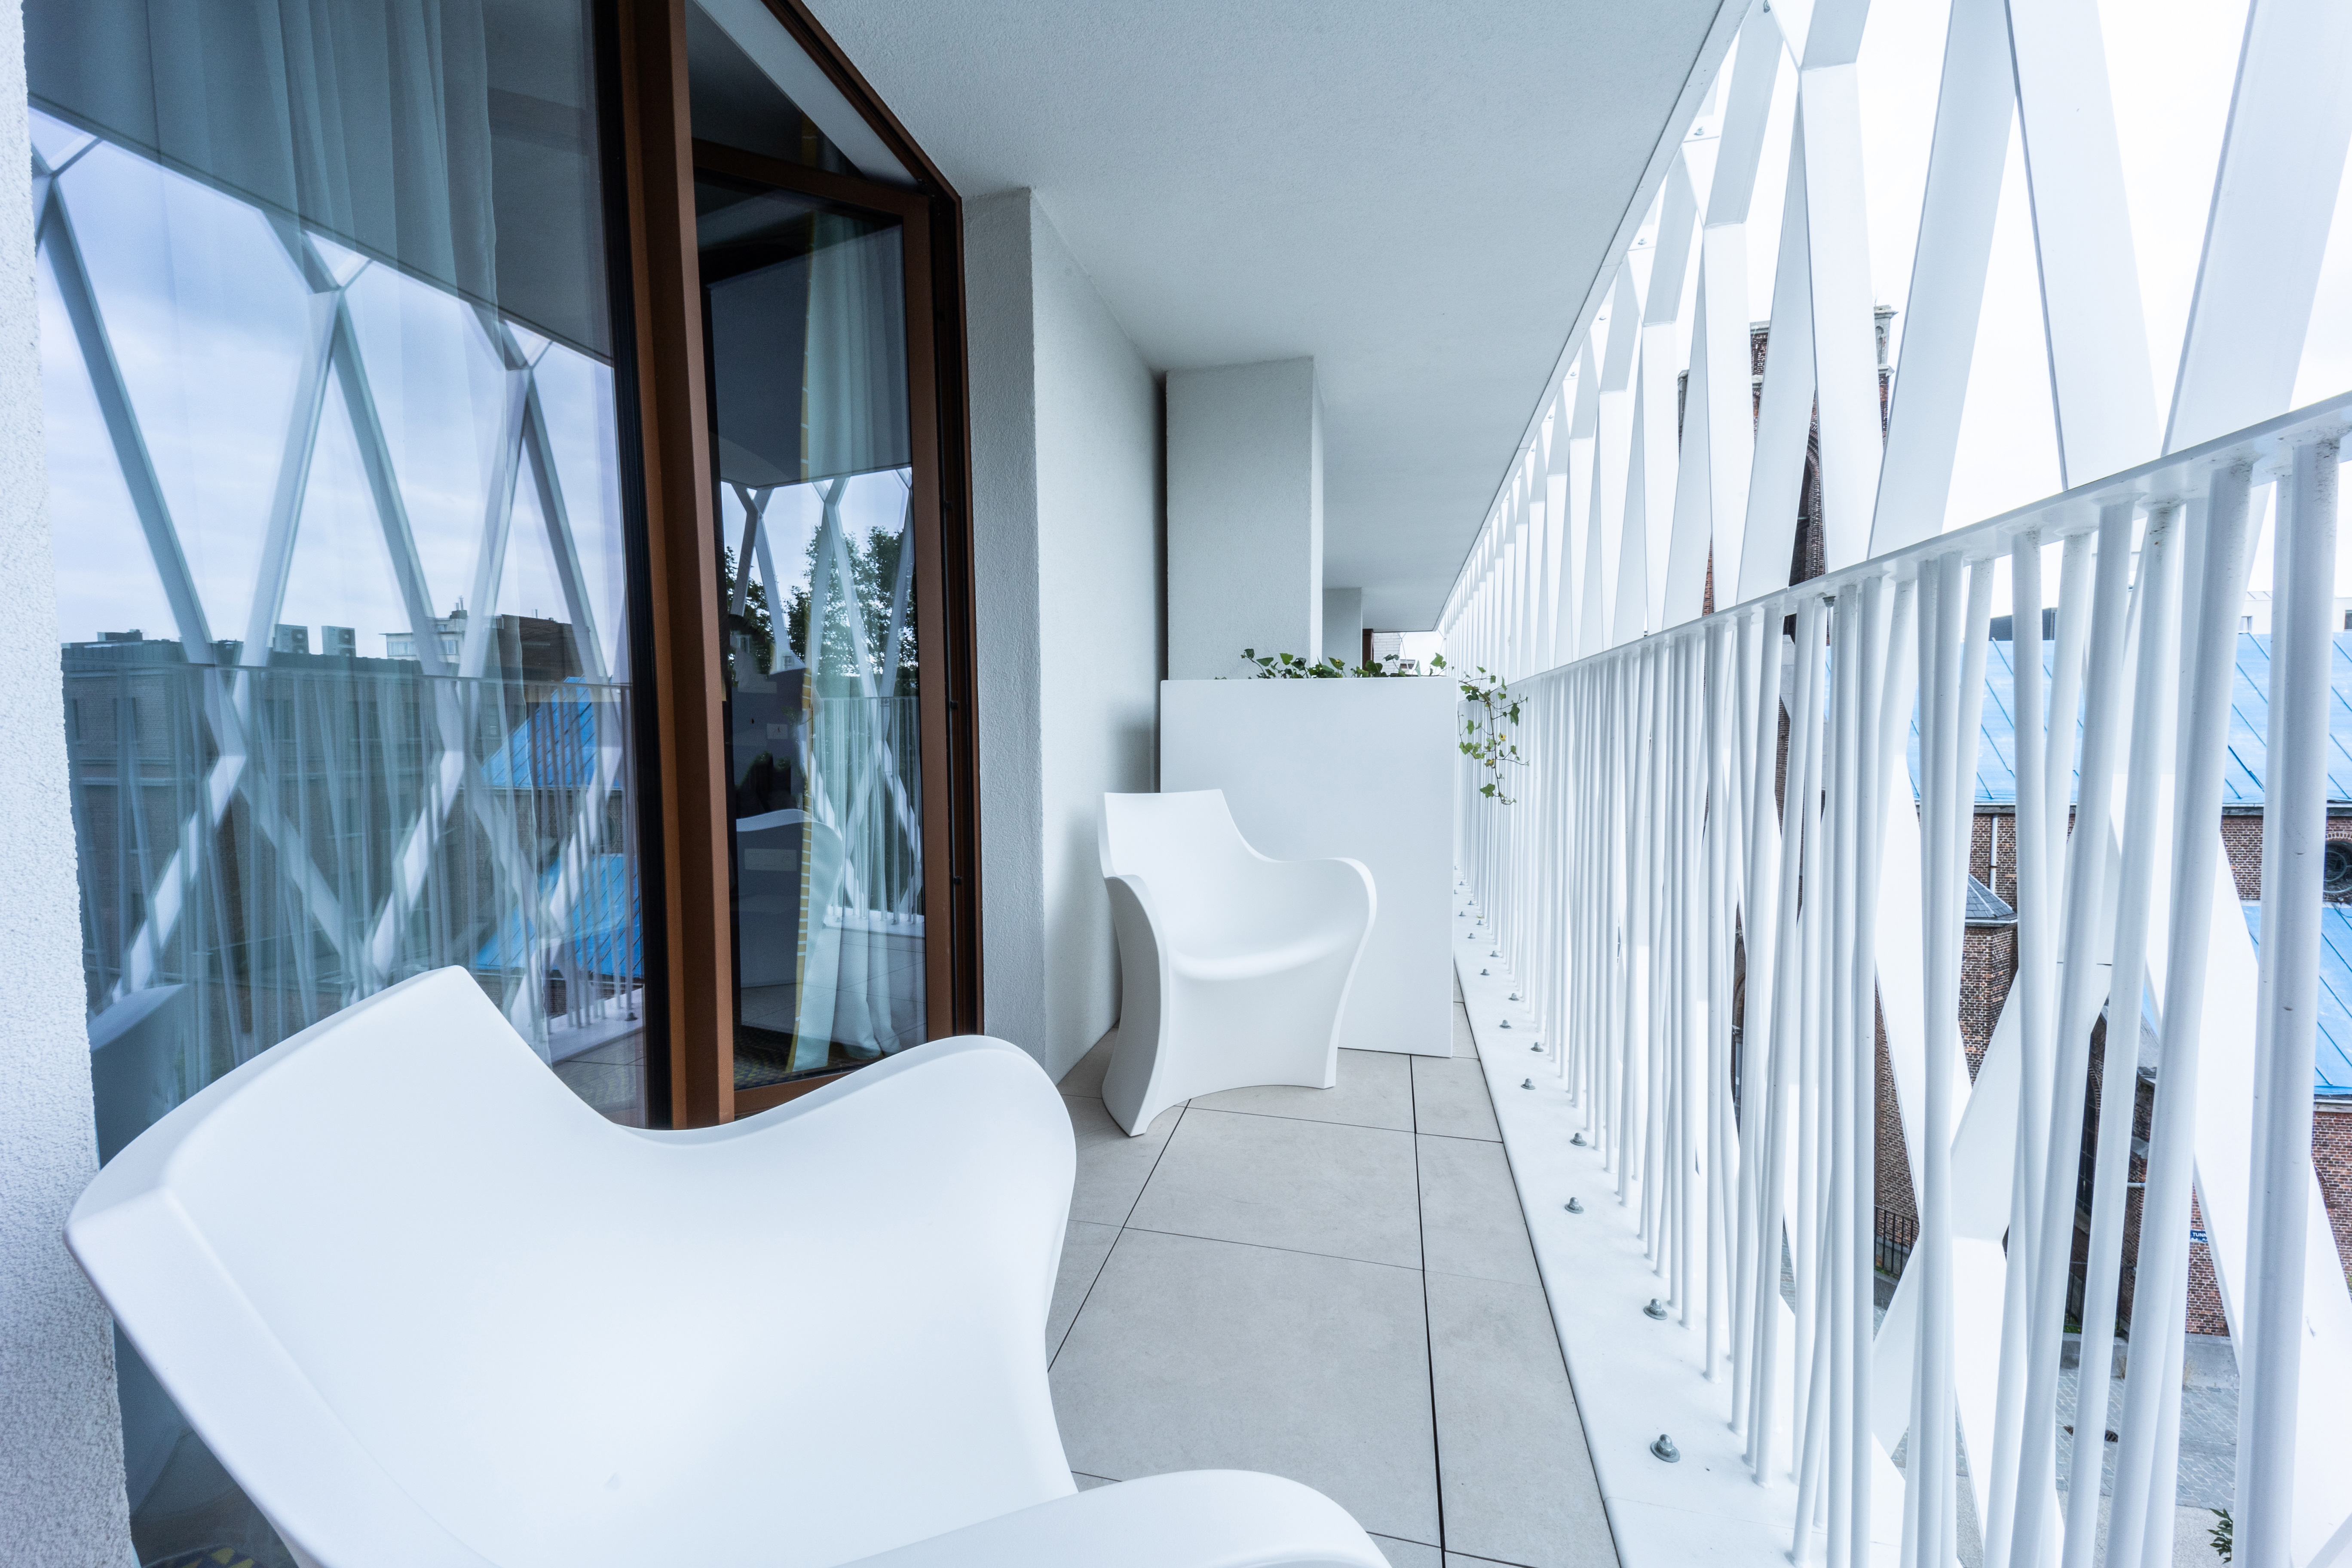 Der helle, moderne Balkon eines Hotelzimmers des prizeotels